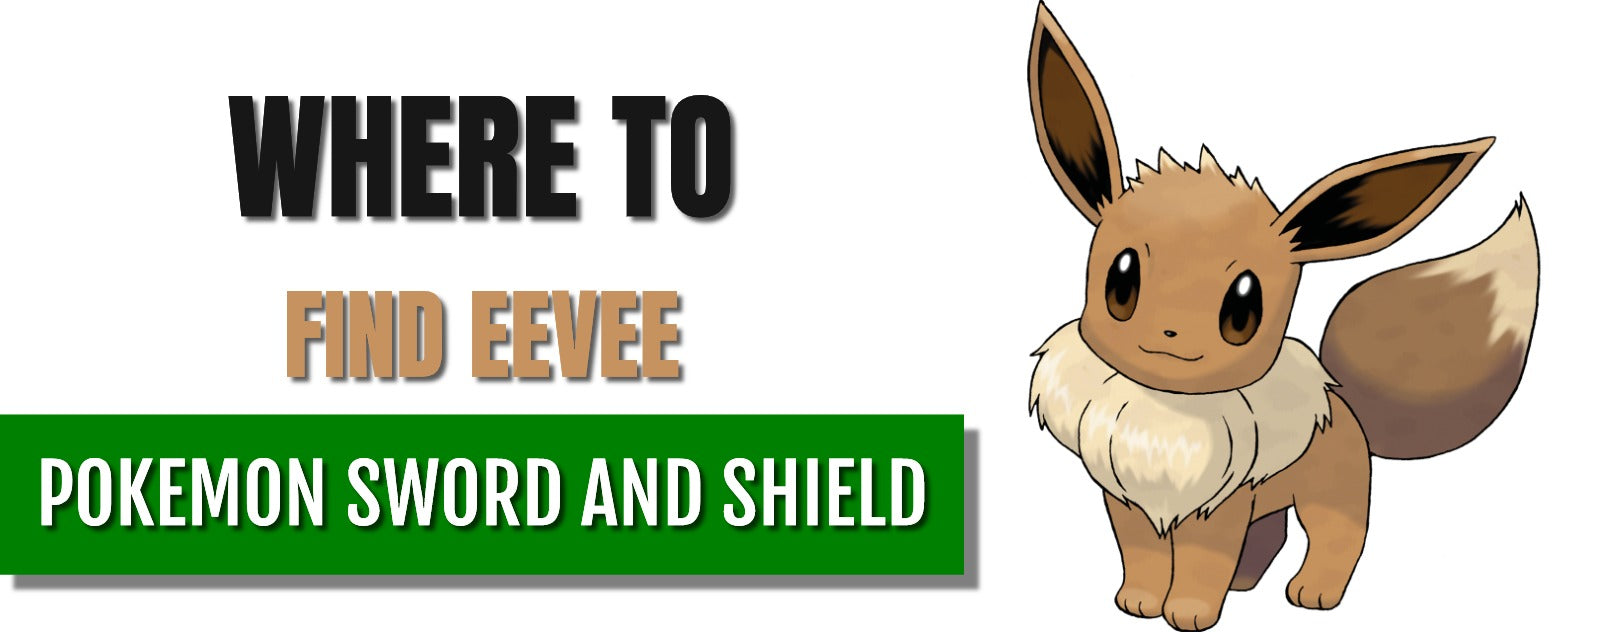 Eevee evolutions: how to evolve Eevee in Pokémon Sword and Shield